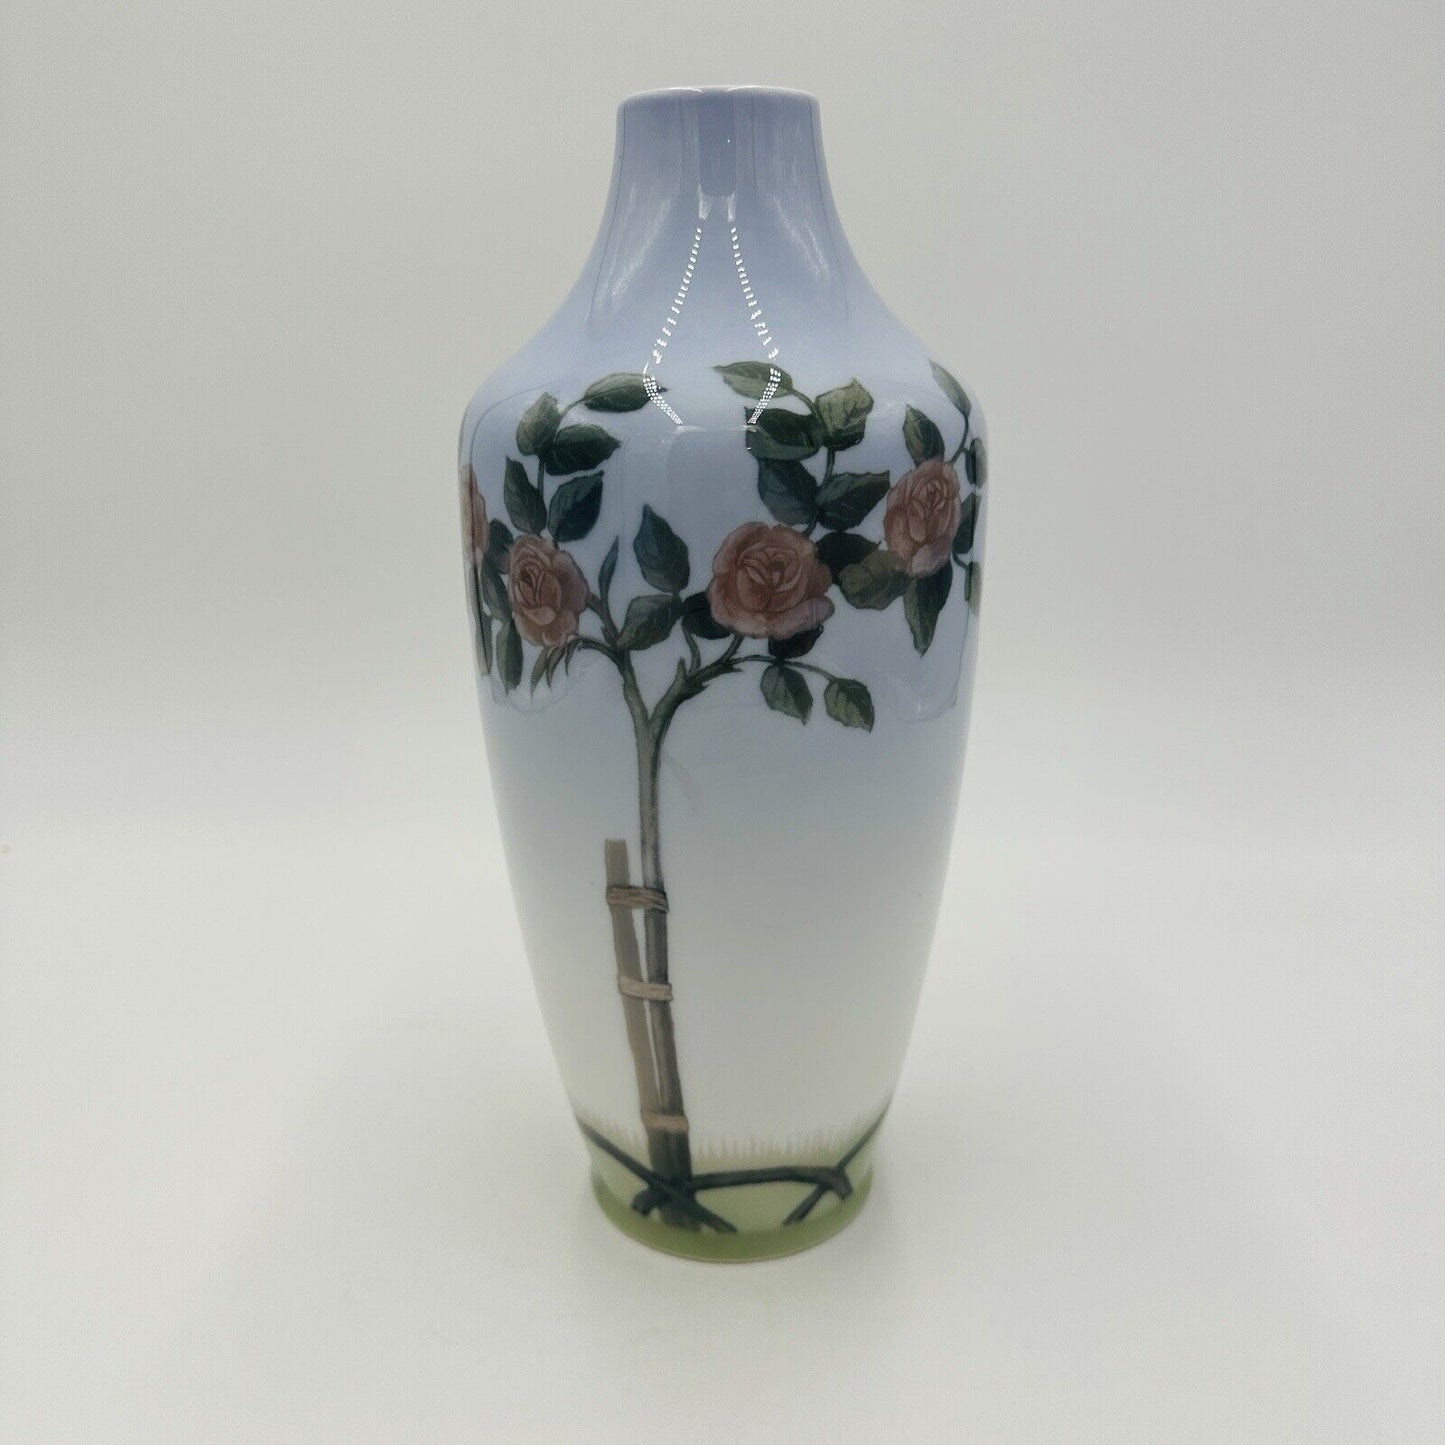 Vintage Royal Copenhagen Porcelain Vase 203/231 roses bush Denmark Art Nouveau